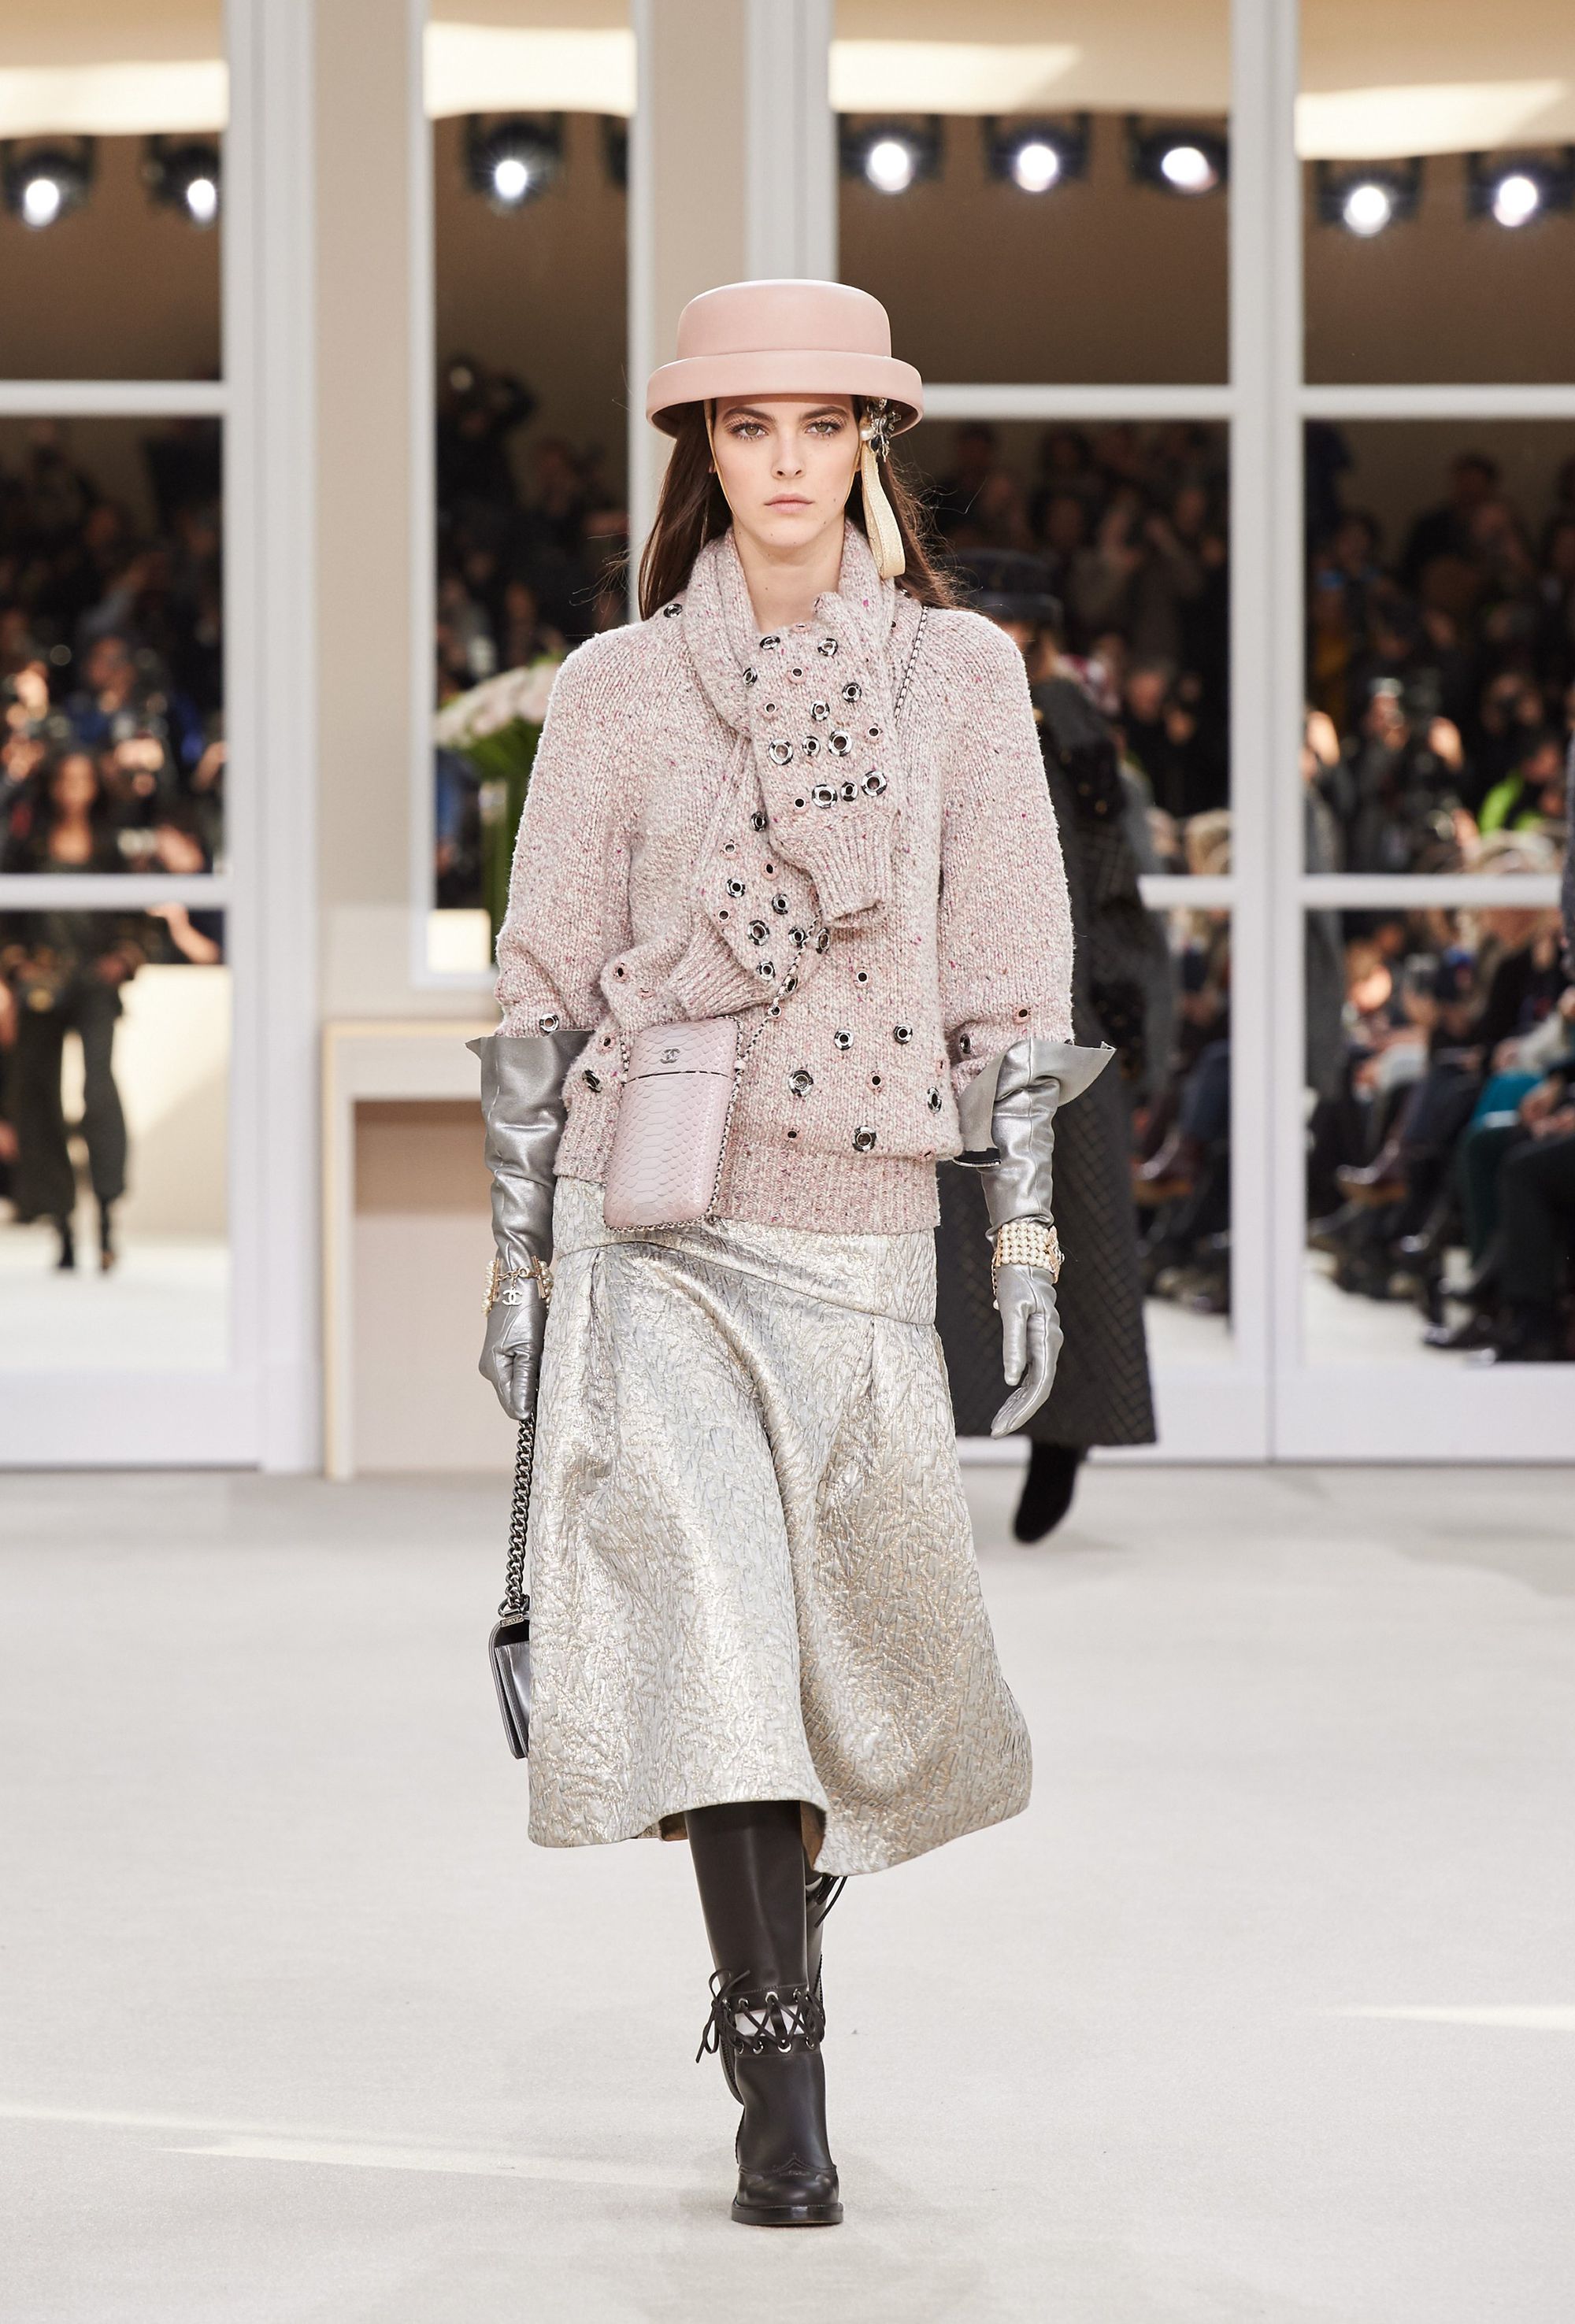 Chanel F/W 16 womenswear #36 - Tagwalk: The Fashion Search Engine